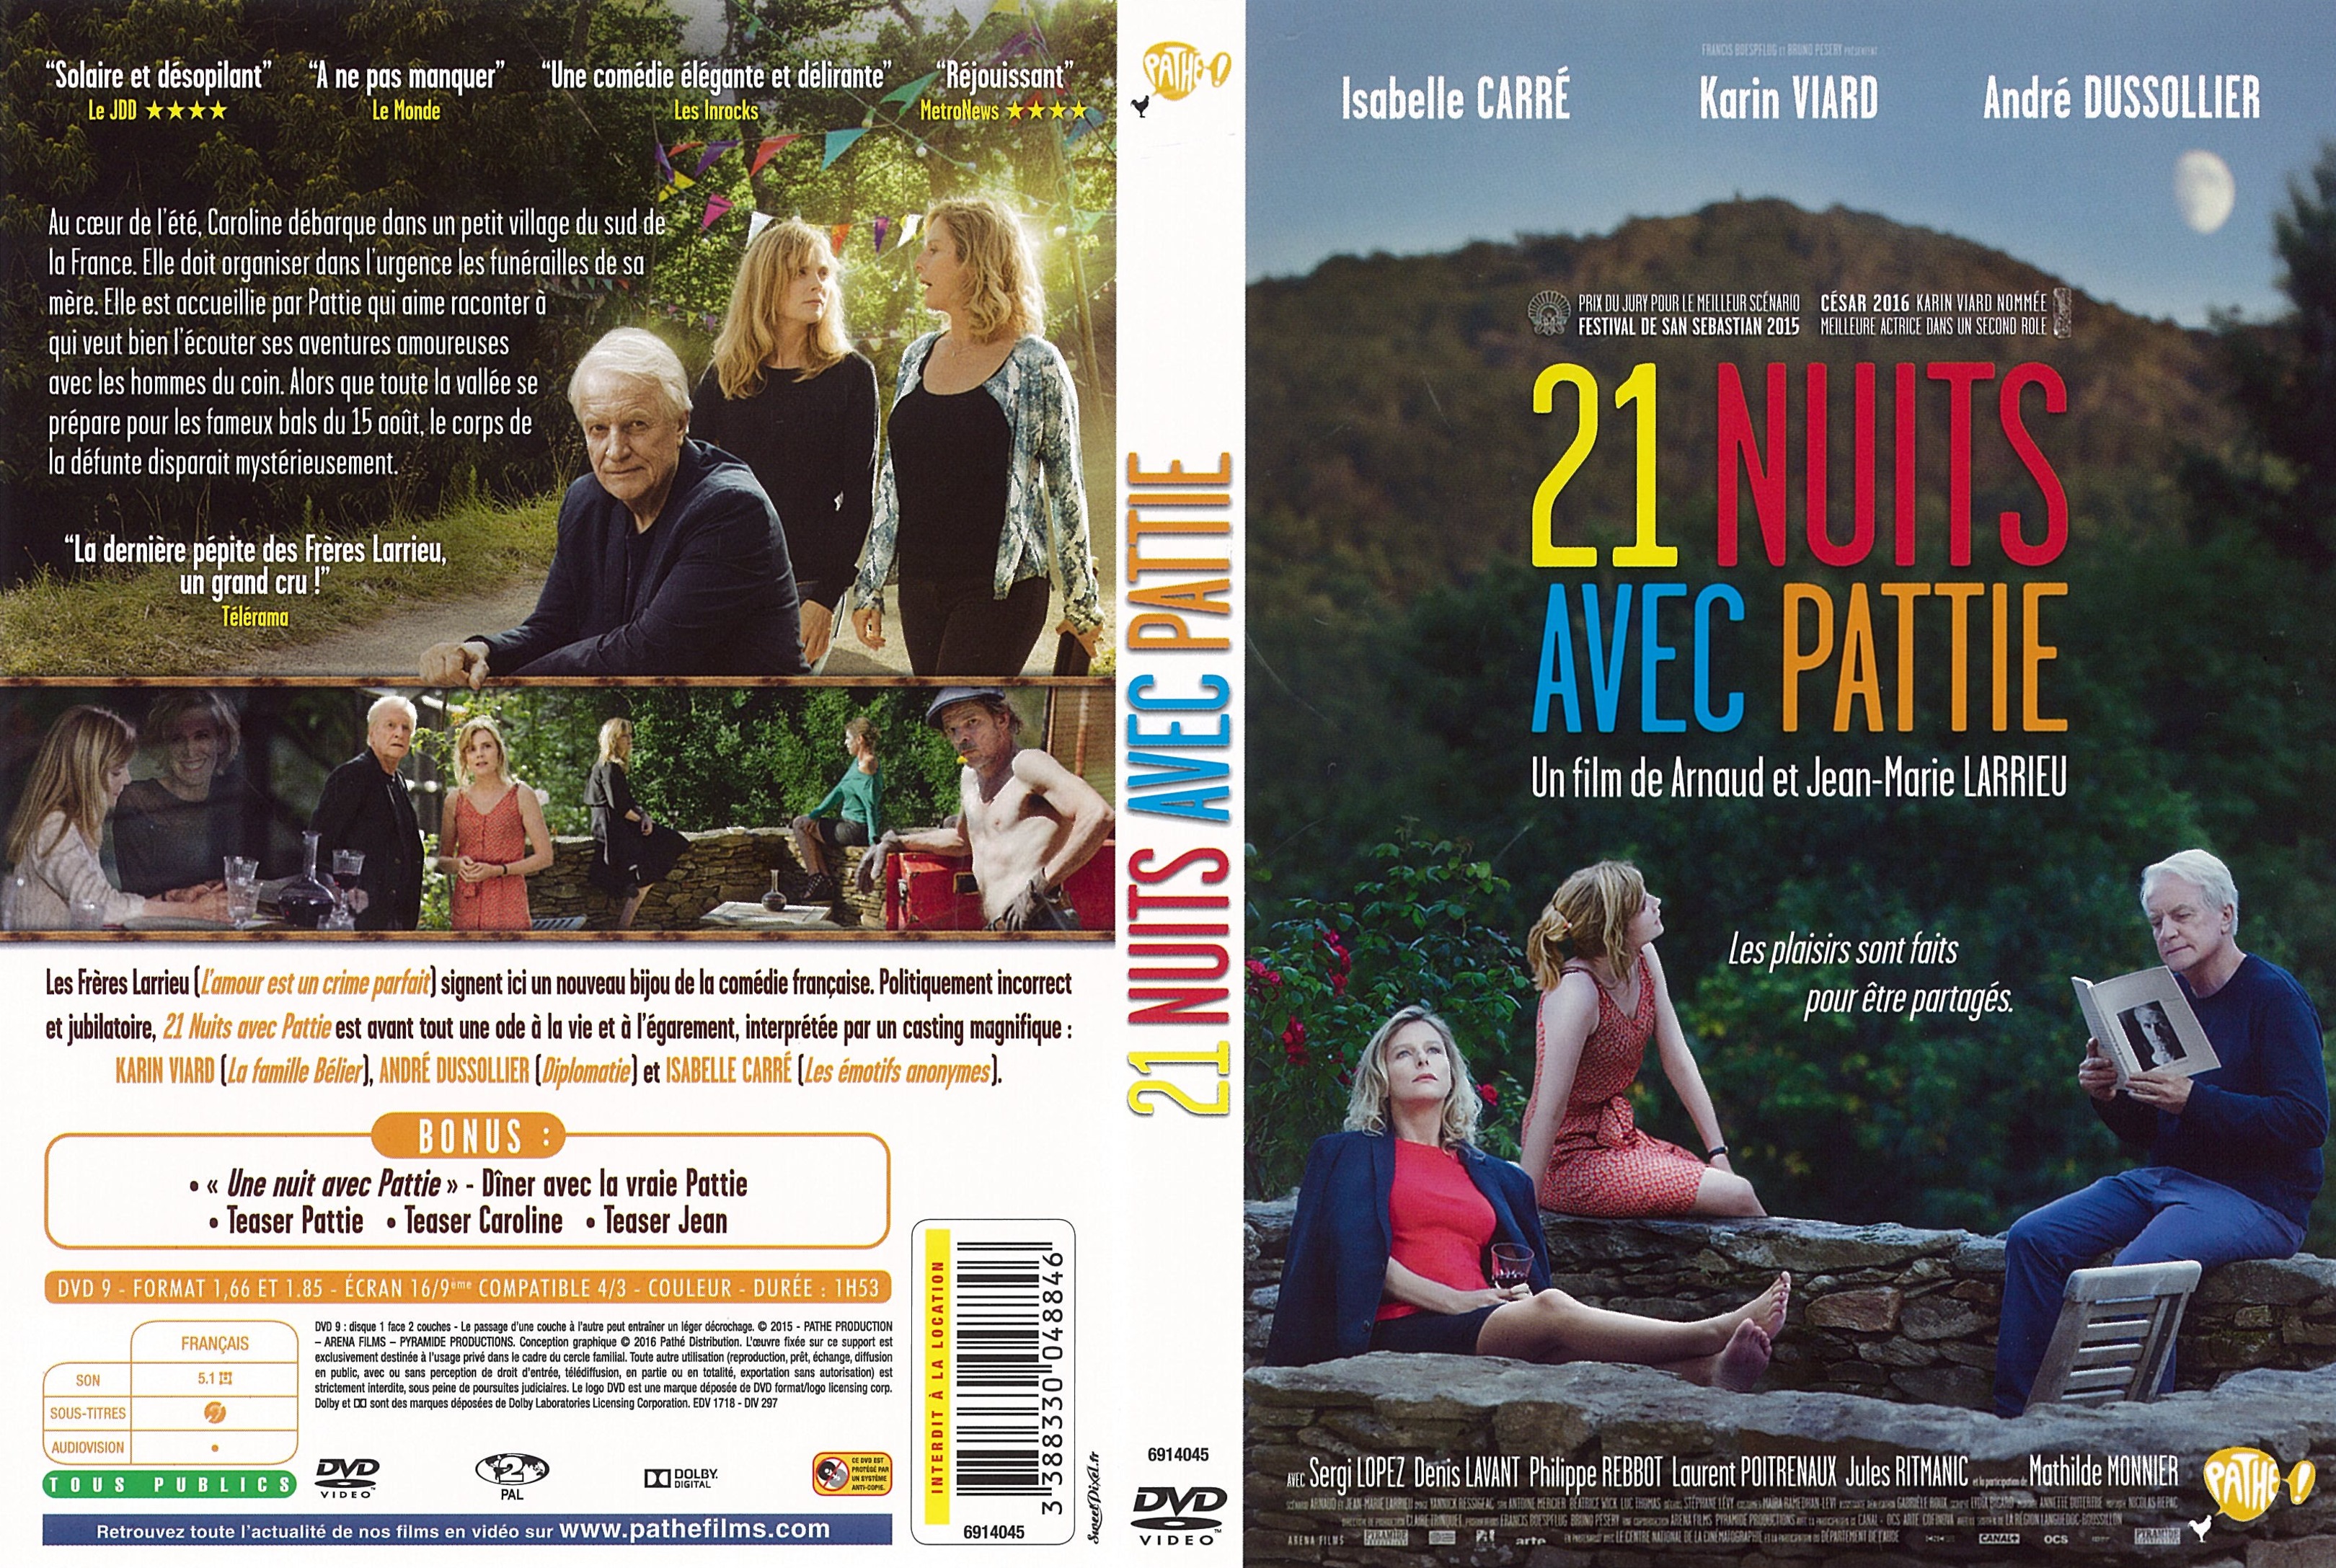 Jaquette DVD 21 nuits avec Pattie